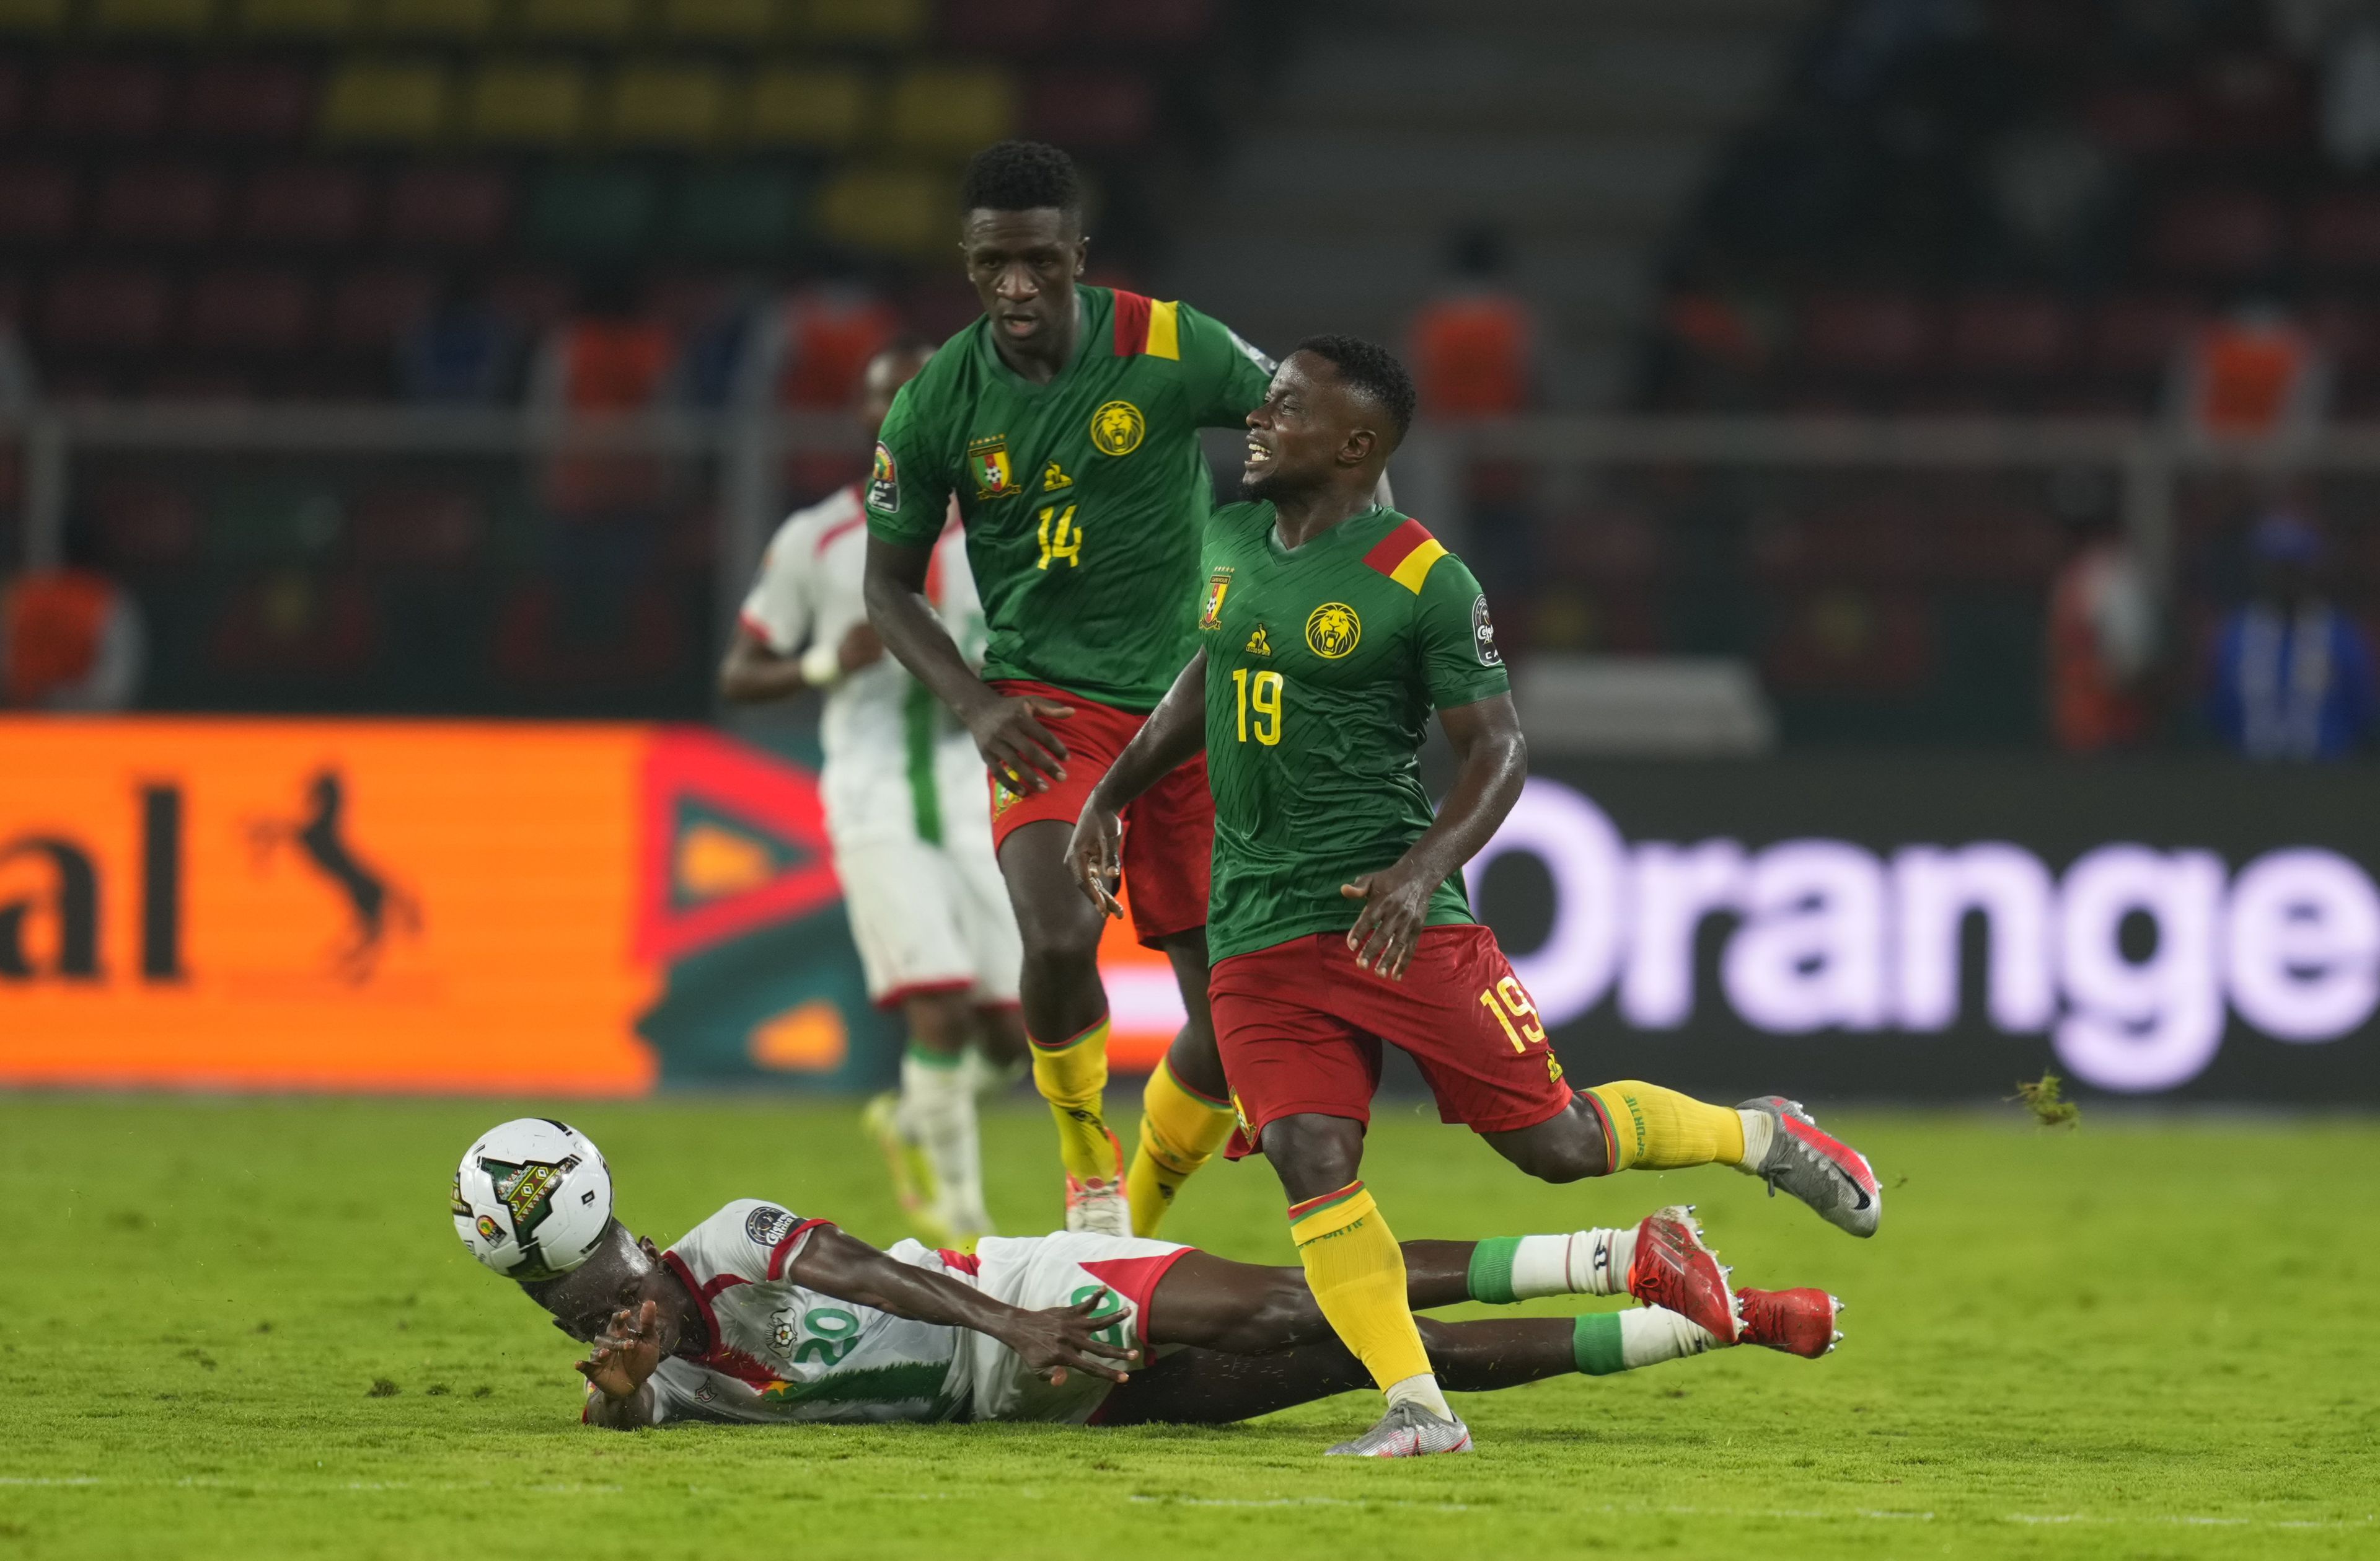 Kamerun győzelemmel kezdte az Afrika Kupát / Fotó: gettyimages